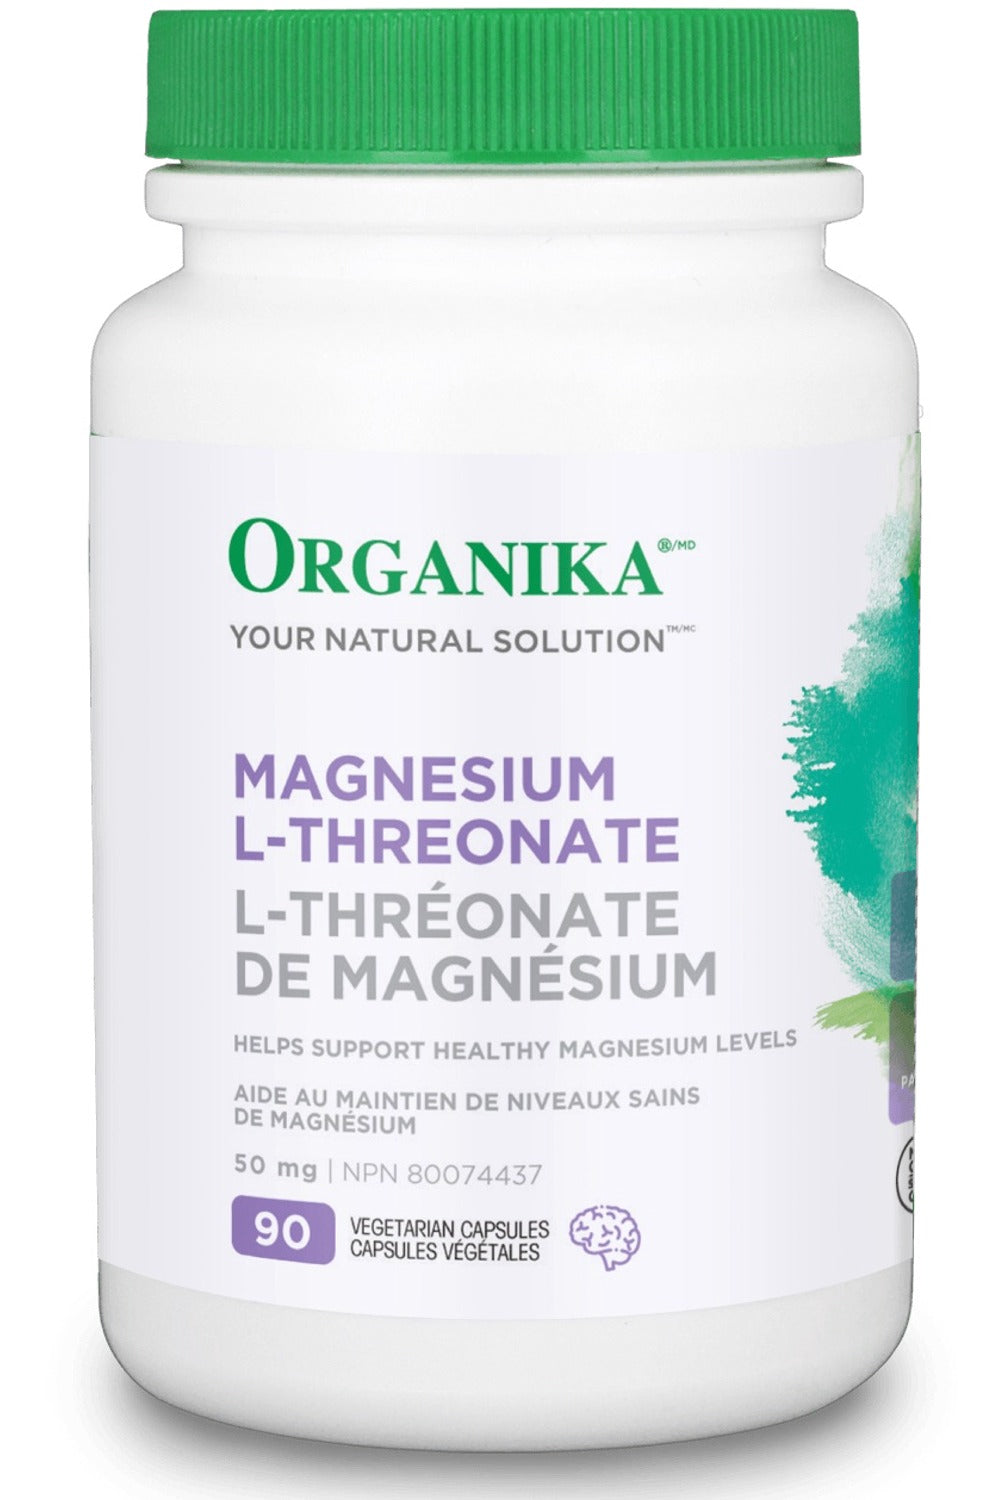 ORGANIKA Magnesium L-Threonate (90 vcaps)